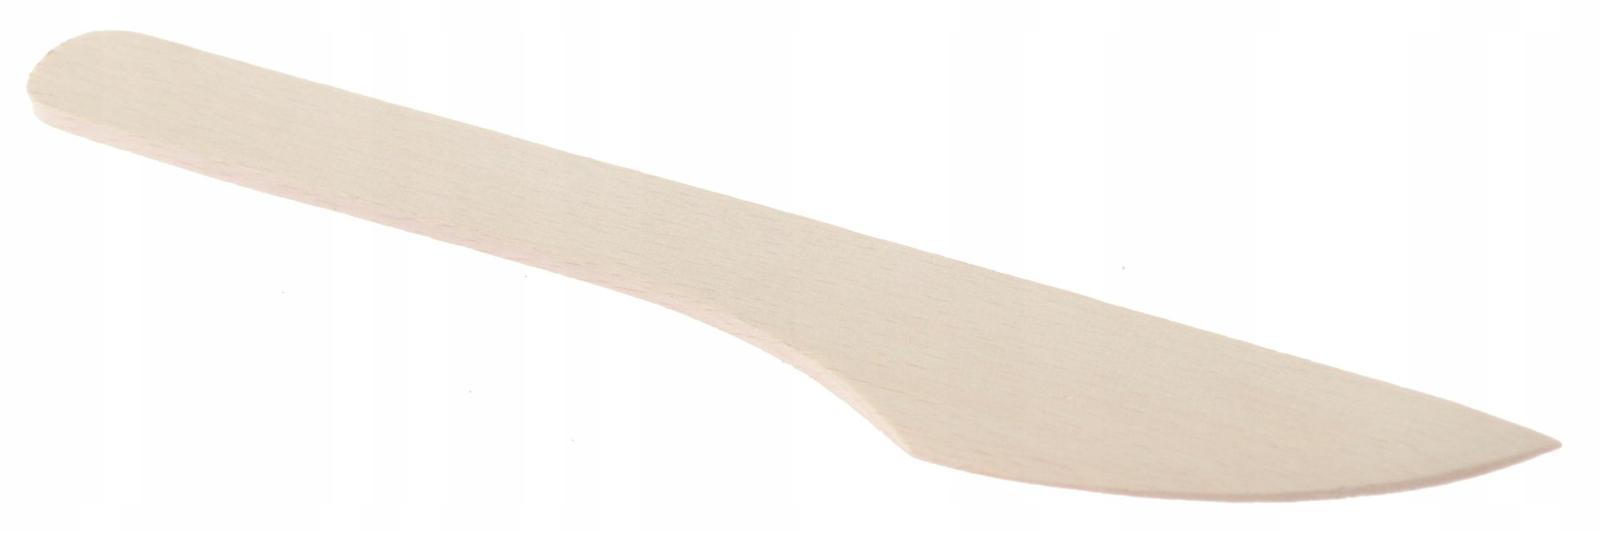 Drewniany nóż 21 cm do smarowania masła powideł nożyk buk naturalny nr. 1